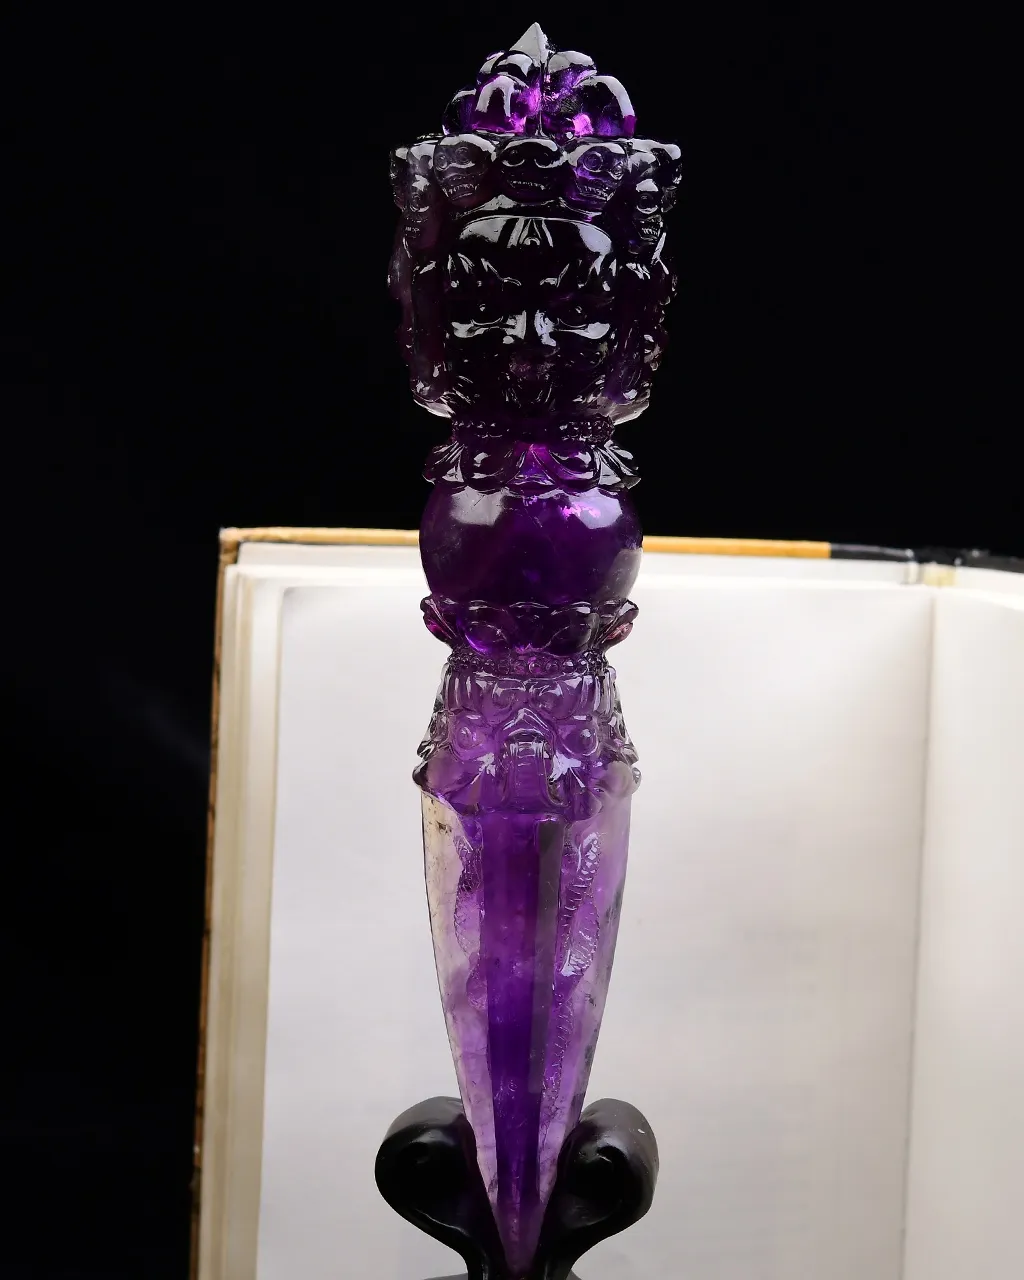 天然紫水晶金刚橛•金刚杵摆件佩戴者顺顺利利保平安，大师雕刻，难度高，遇见请珍惜，实物非常漂亮 